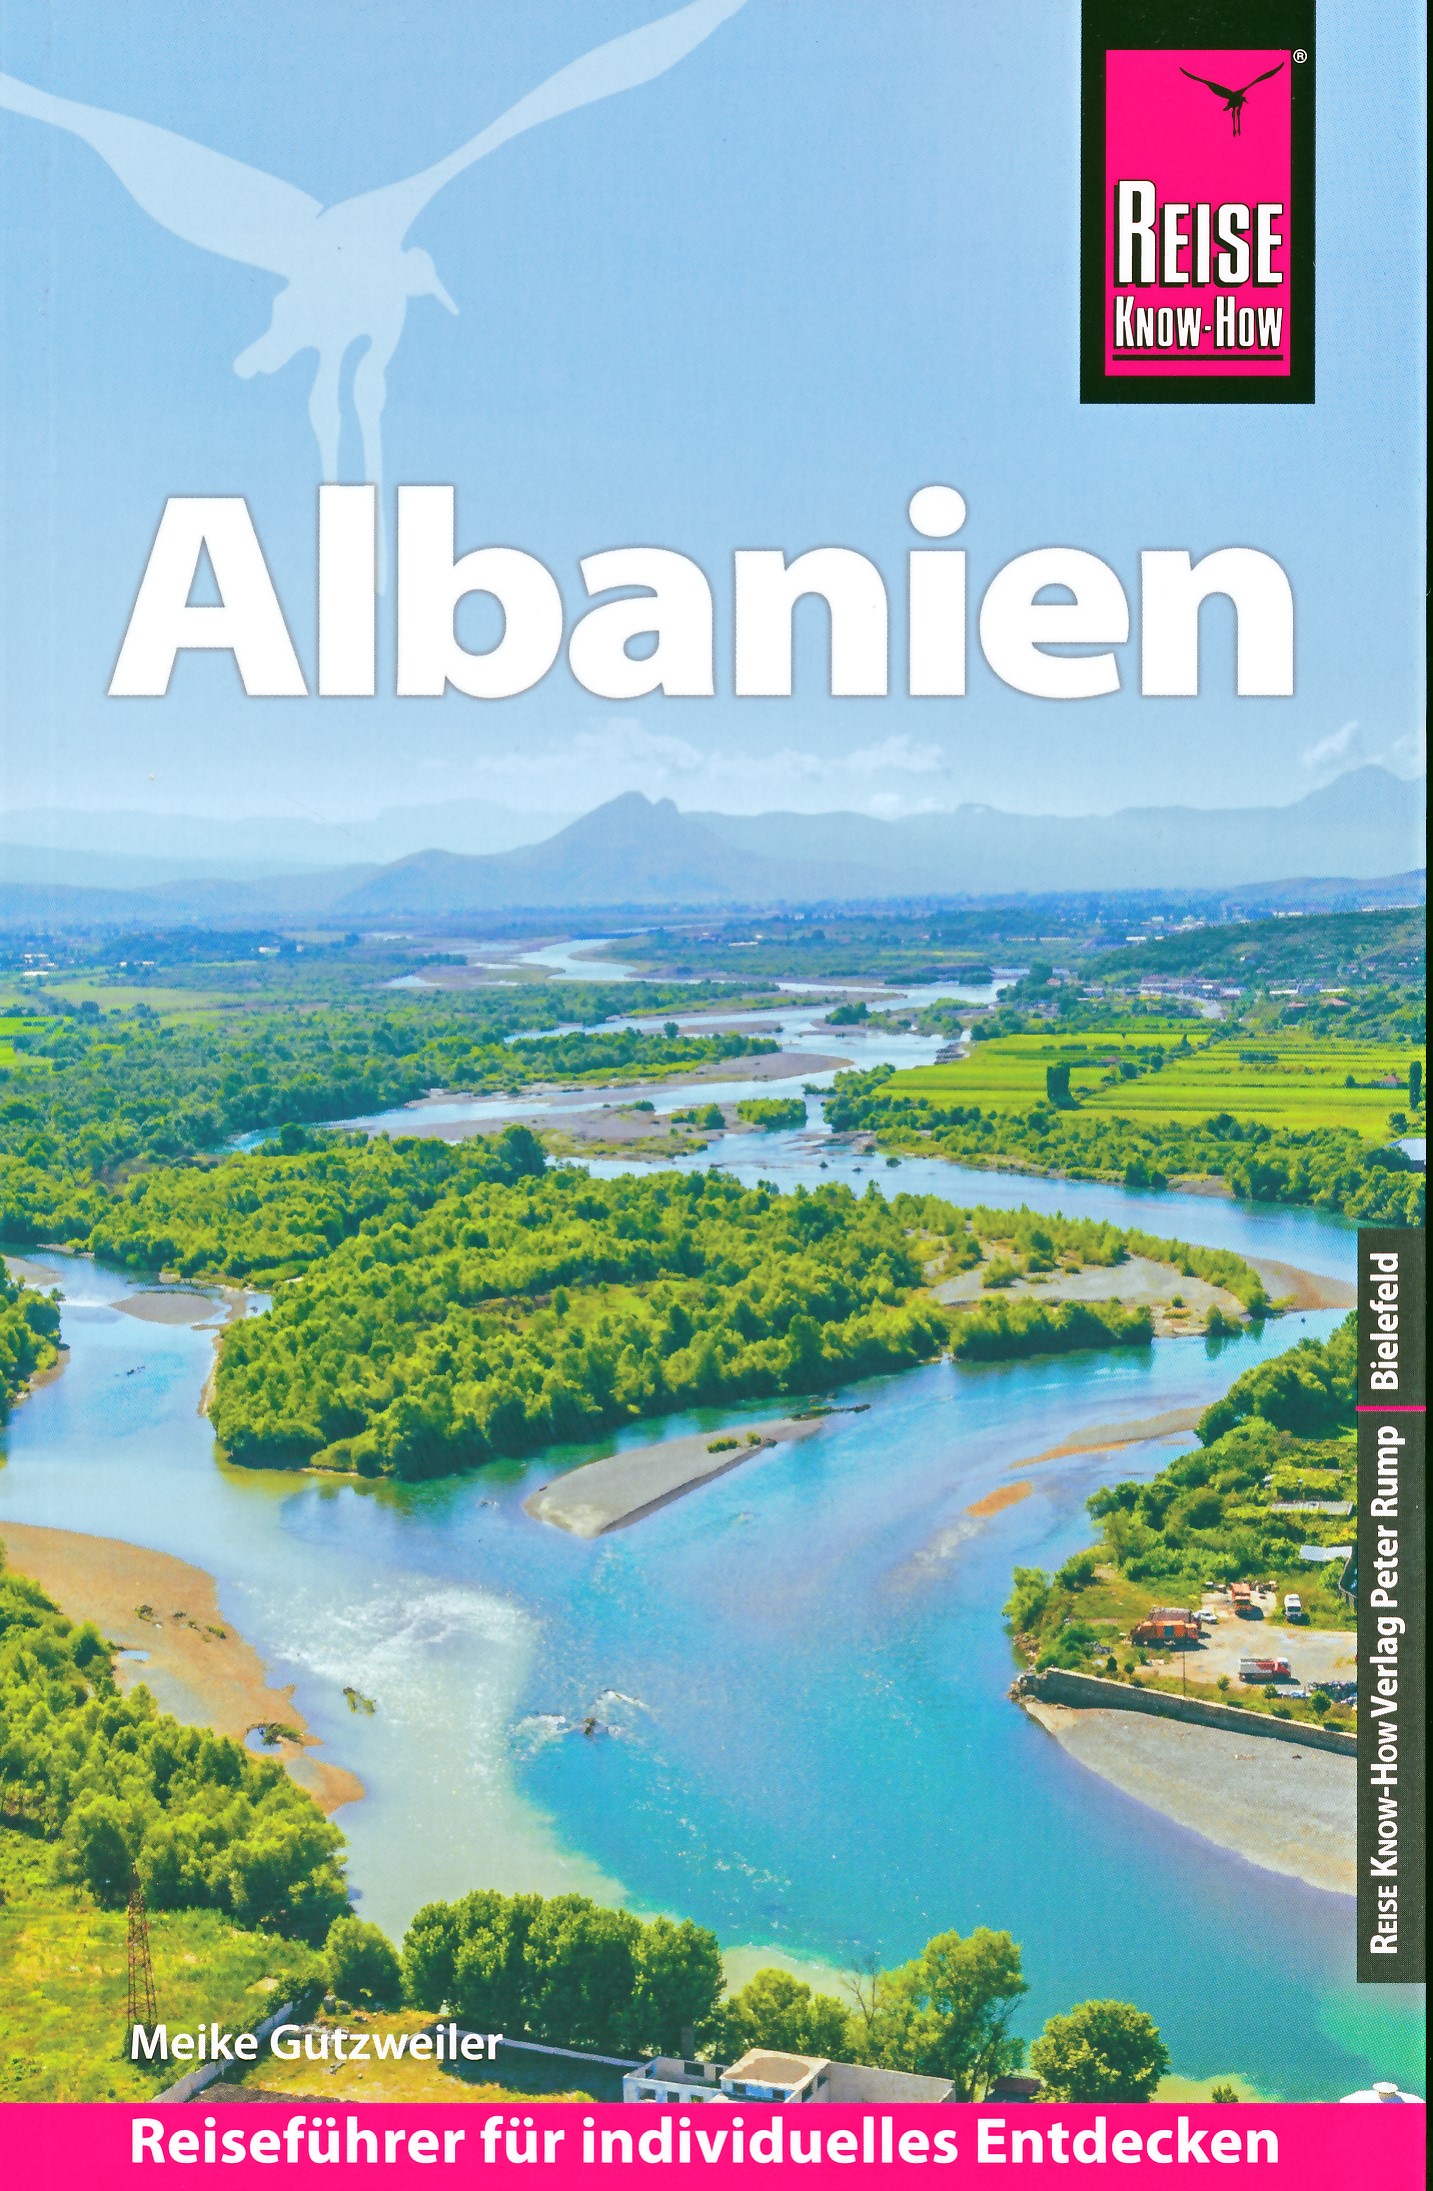 Online bestellen: Reisgids Albanien - Albanië | Reise Know-How Verlag